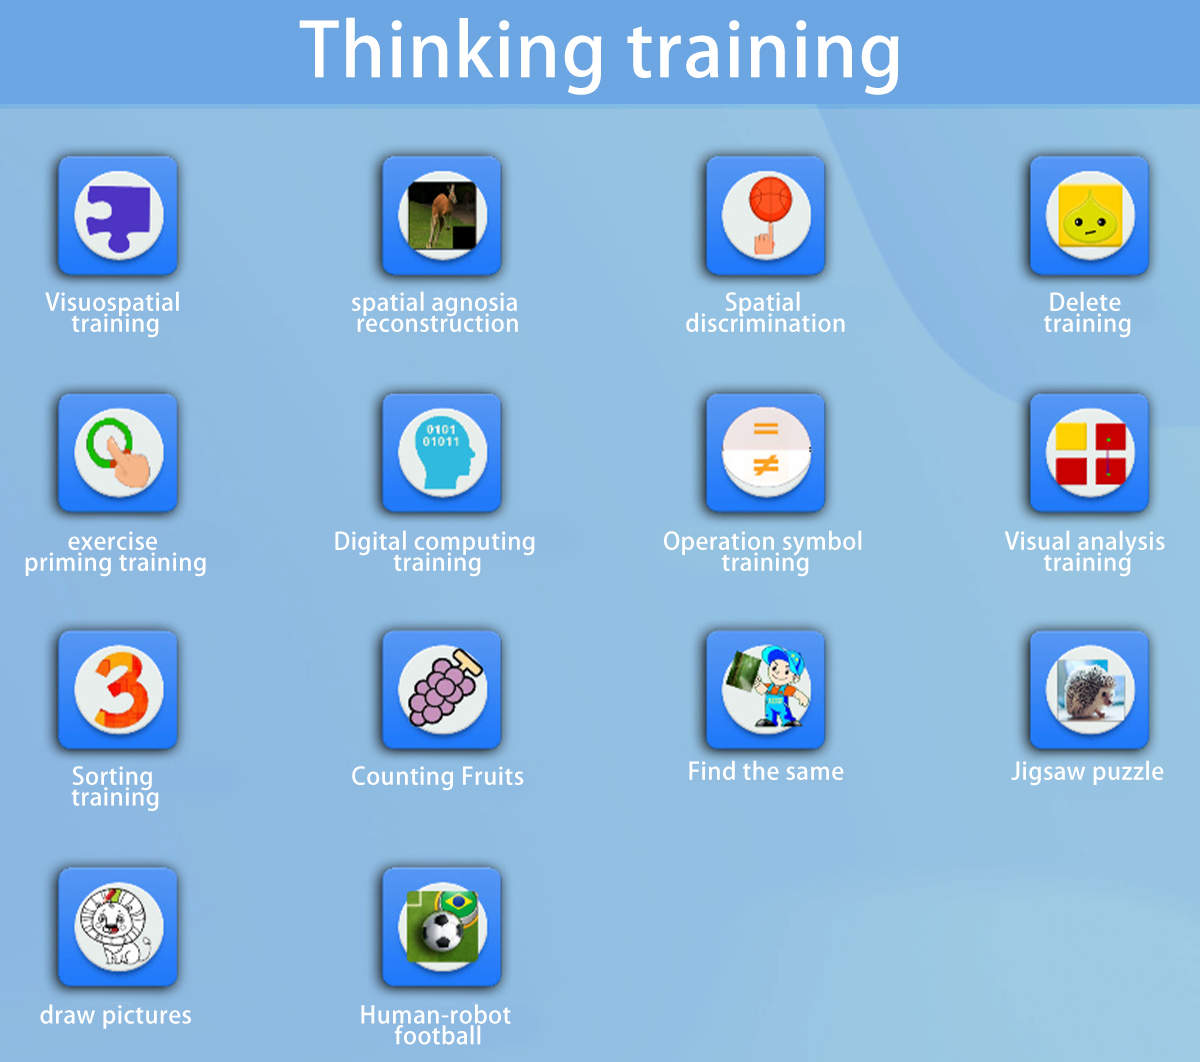 Thinking training